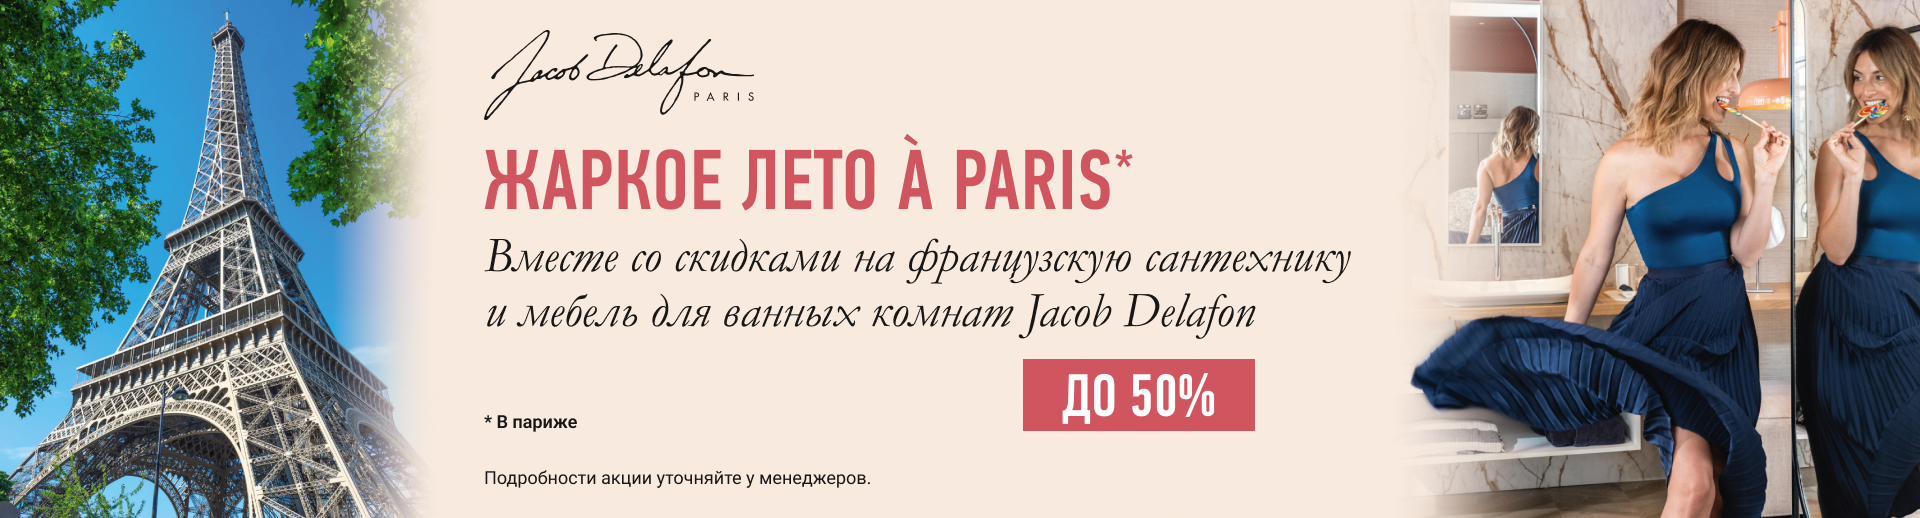   A Paris           Jacob Delafon.   -50%